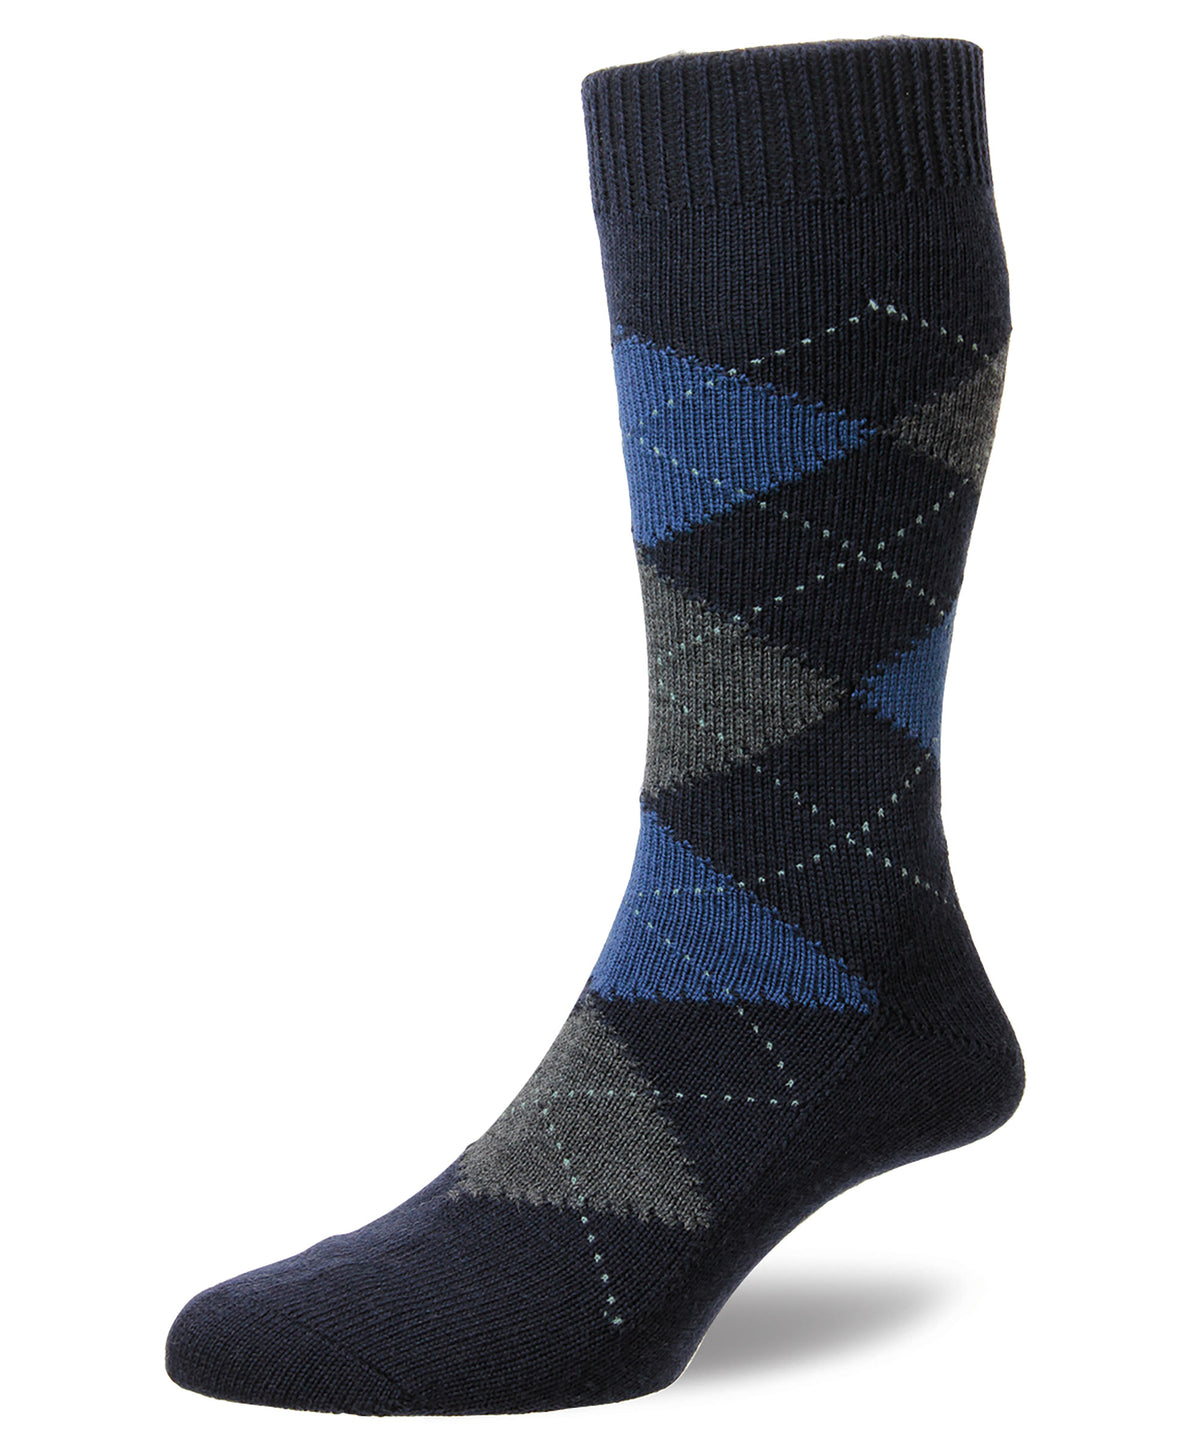 Pantherella Racton Wool Argyle Socks